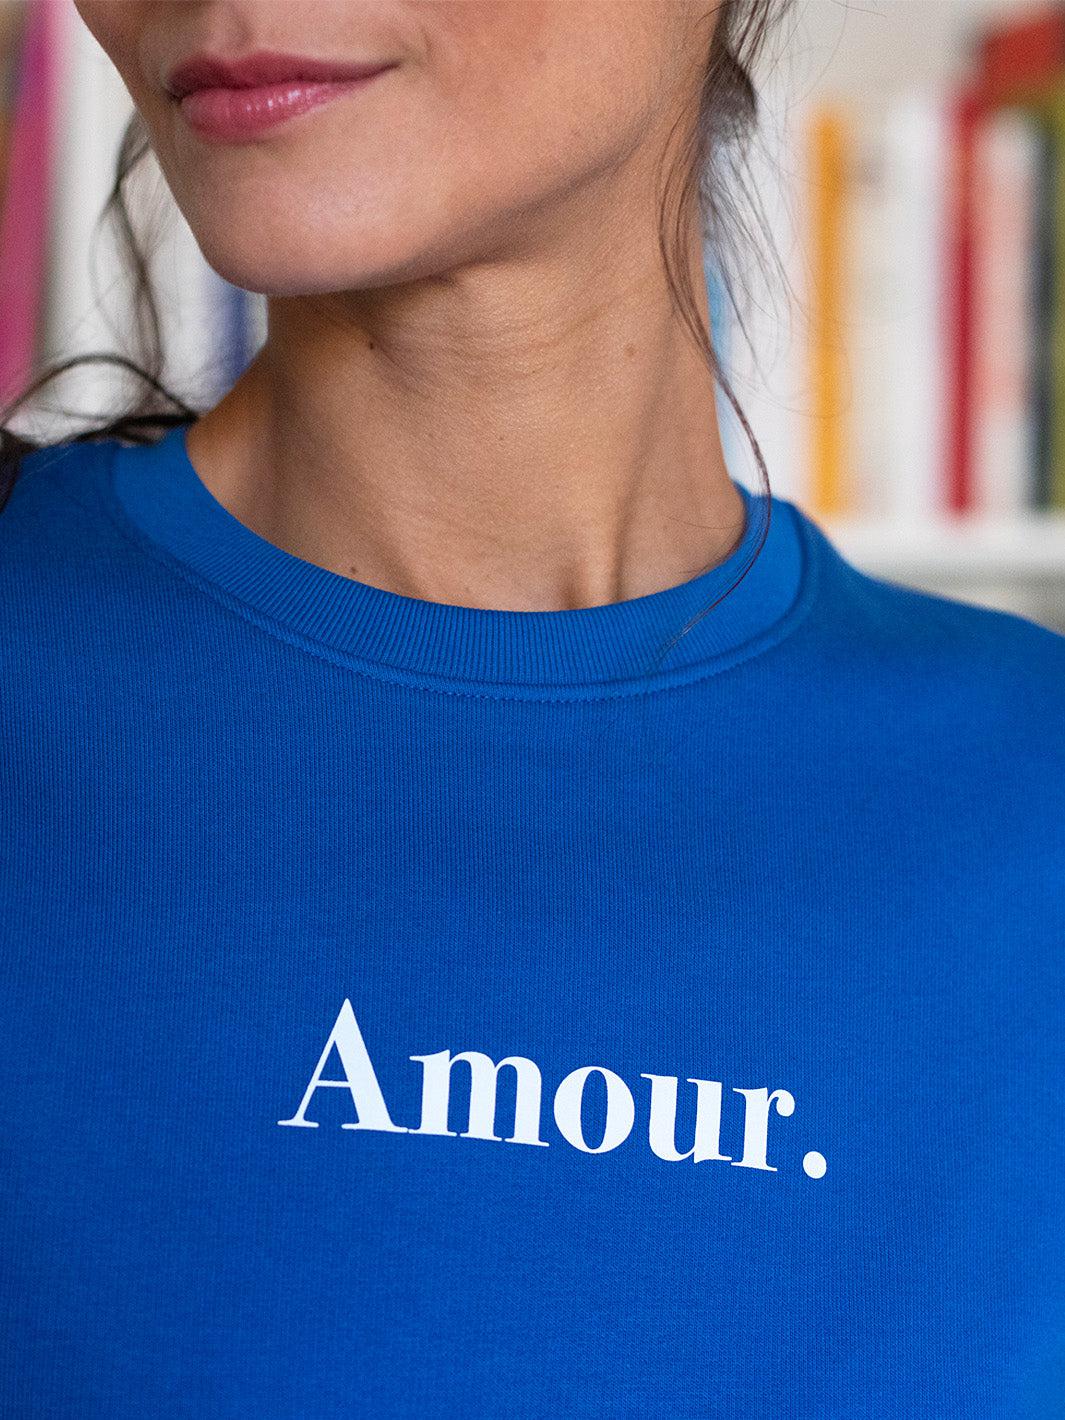 Le Classique "Amour." bleu imprimé blanc F-Rufus Paris